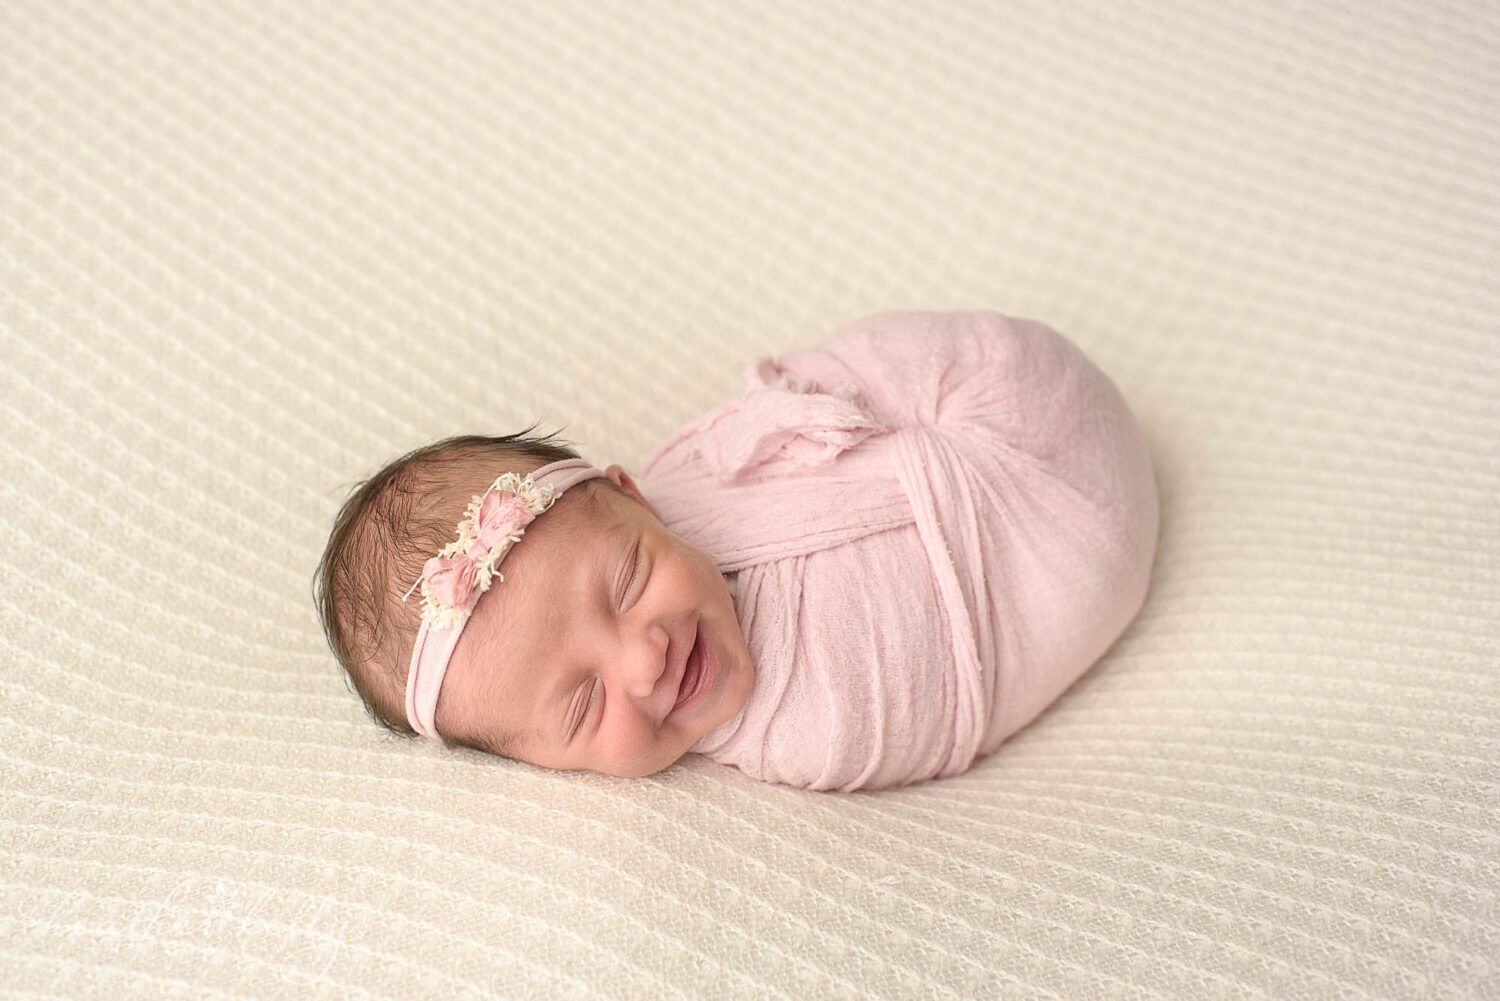 southbury ct newborn photography